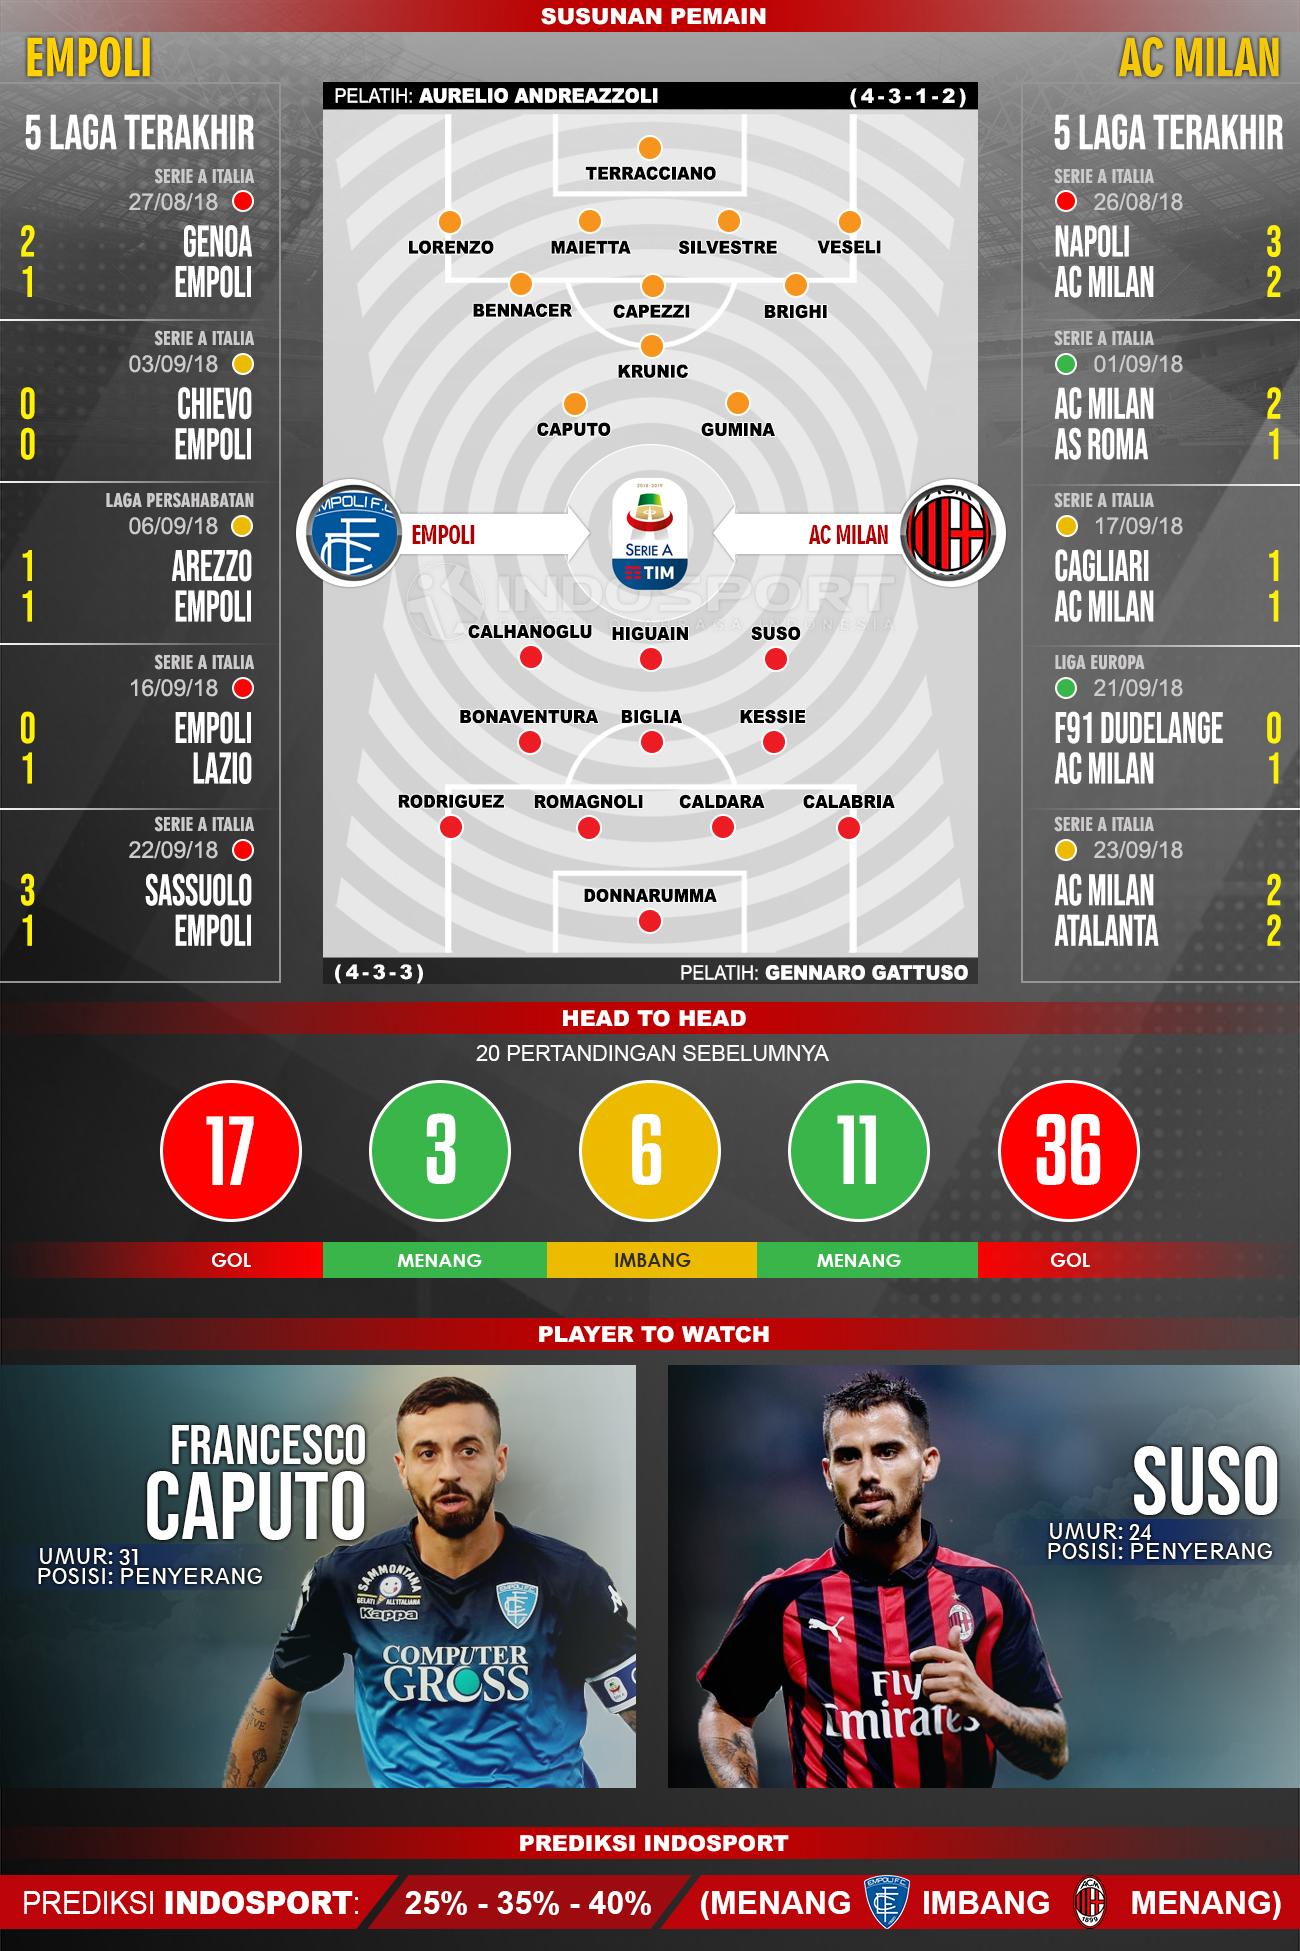 Empoli vs AC Milan (Susunan Pemain - Lima Laga Terakhir - Player to Watch - Prediksi Indosport) Copyright: INDOSPORT